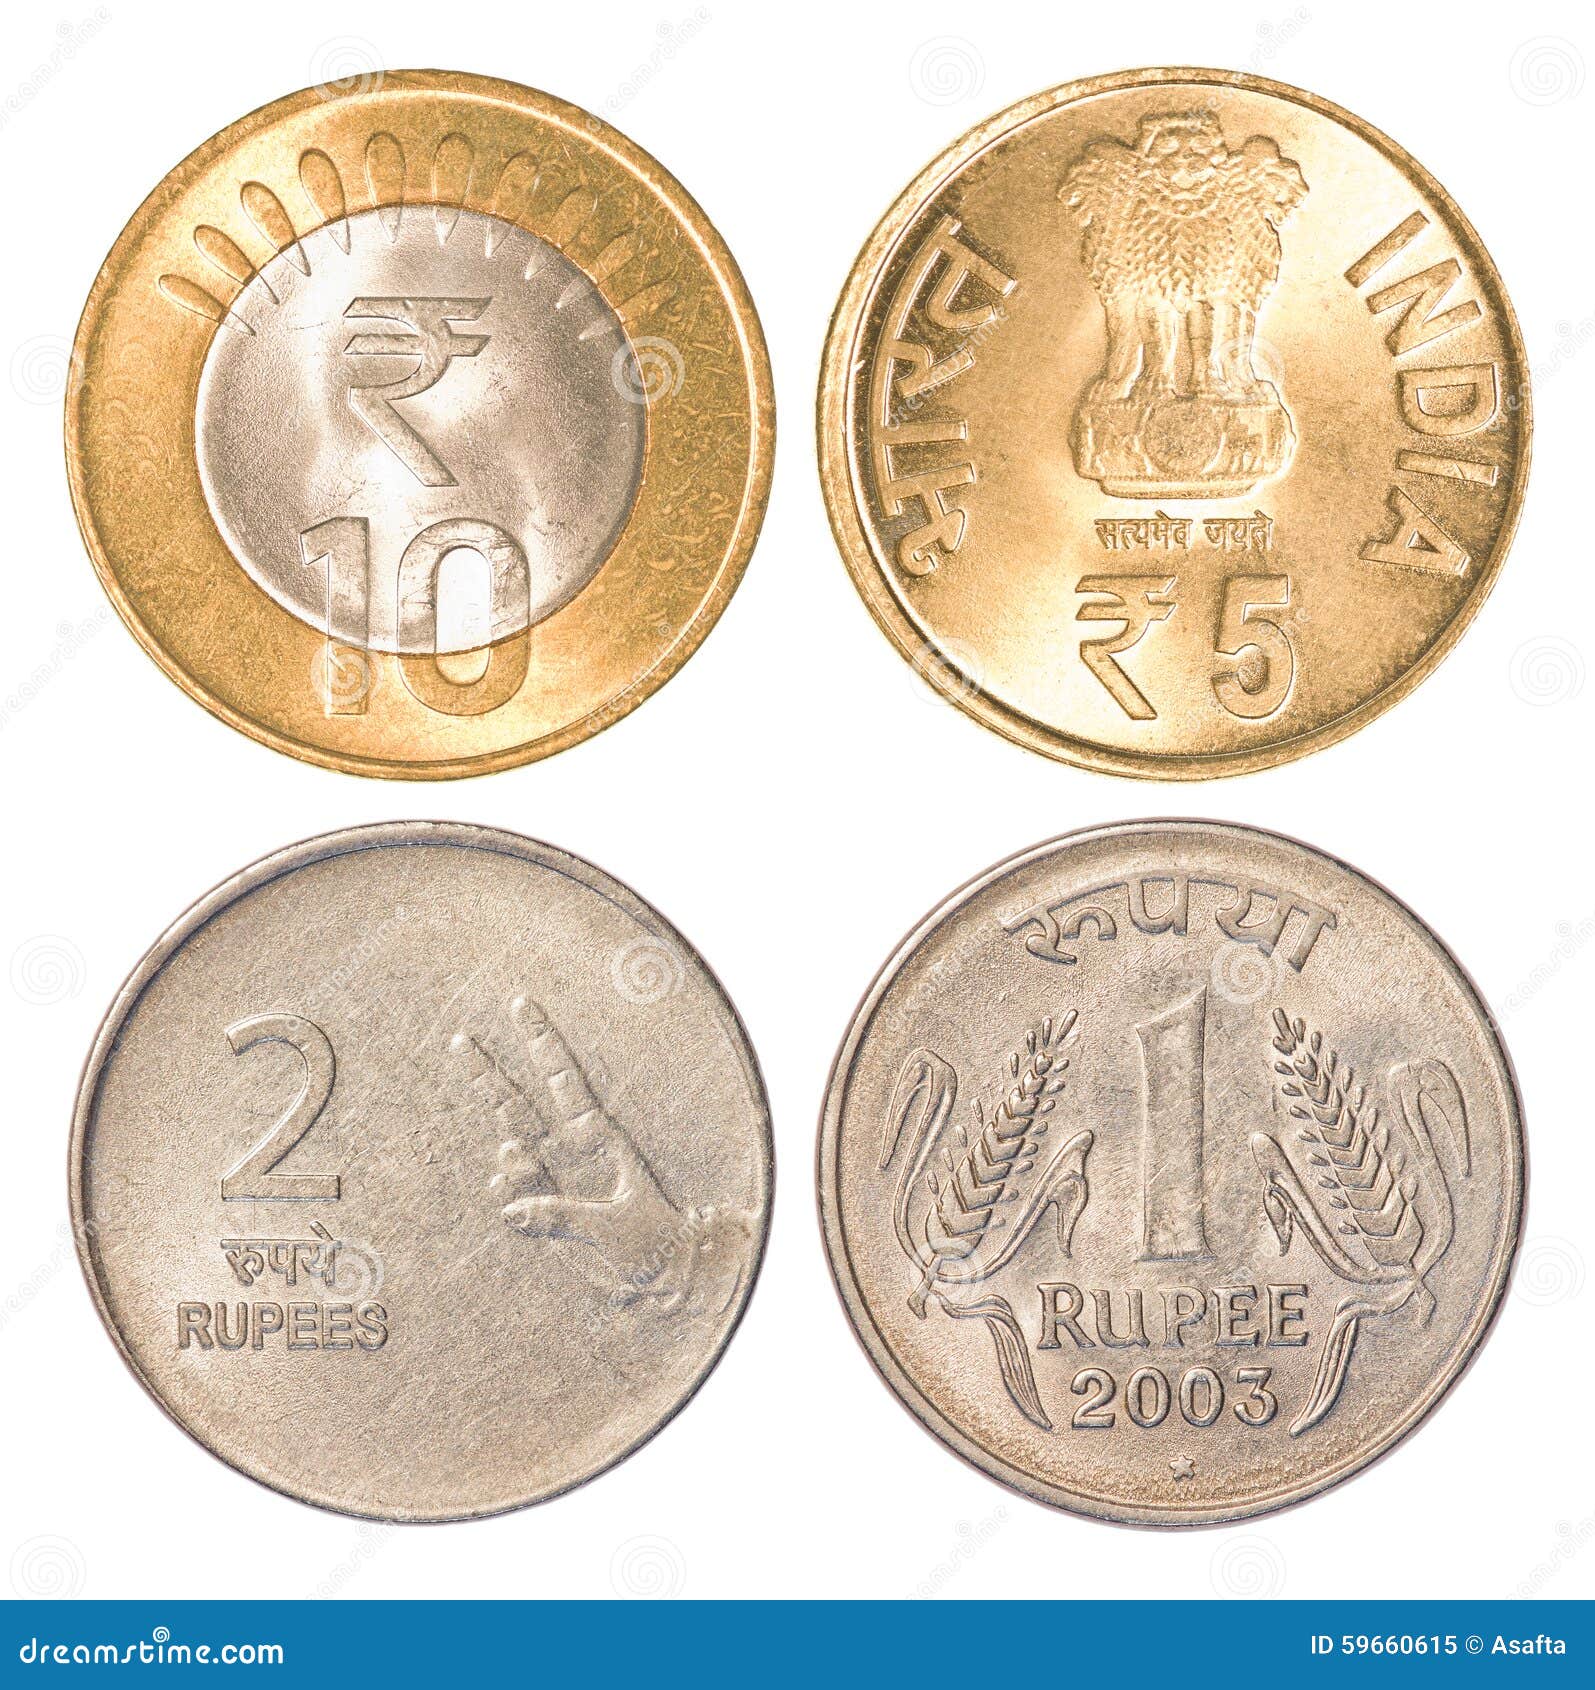 印度的硬币 库存图片. 图片 包括有 麦子, 卢比, 收集, 框架, 编号, 货币, 硬币, 金属, 造币 - 107555867